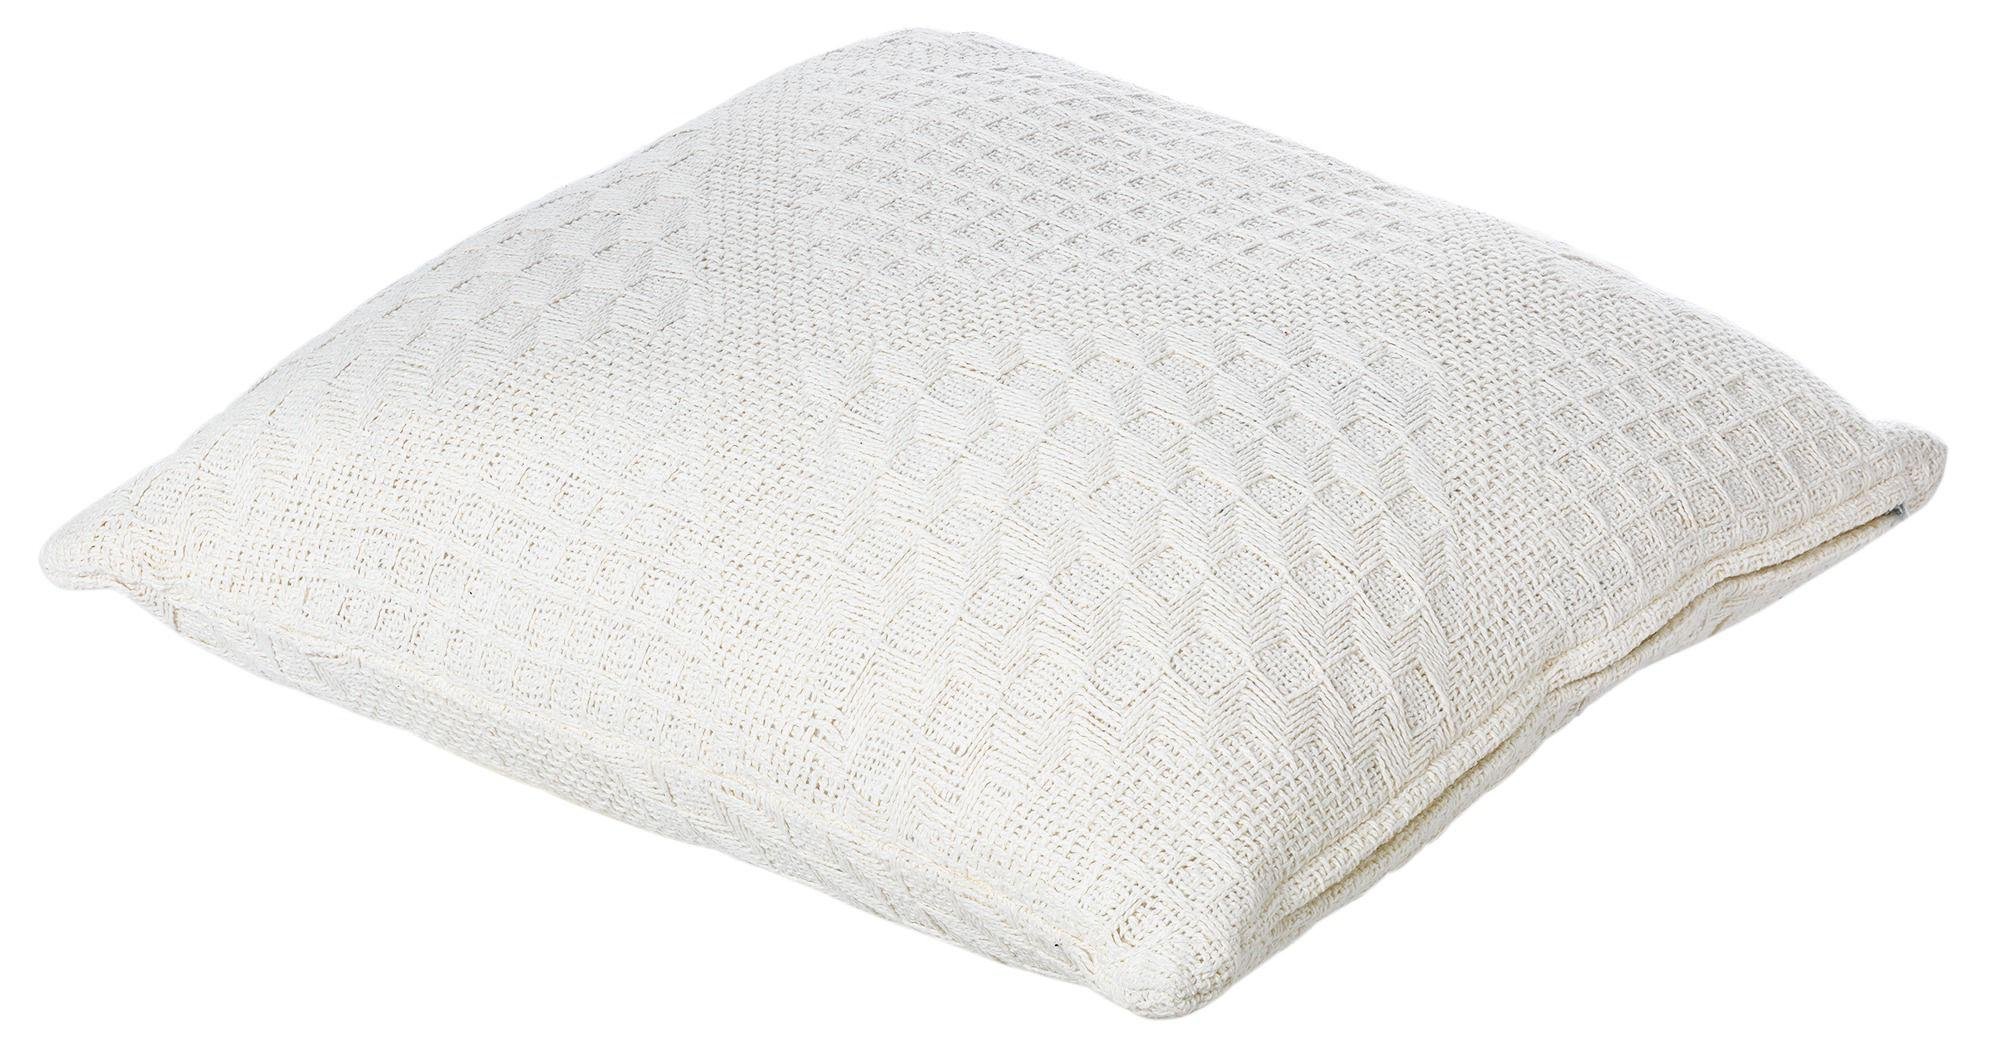 Argos Home Basic Cushion Reviews